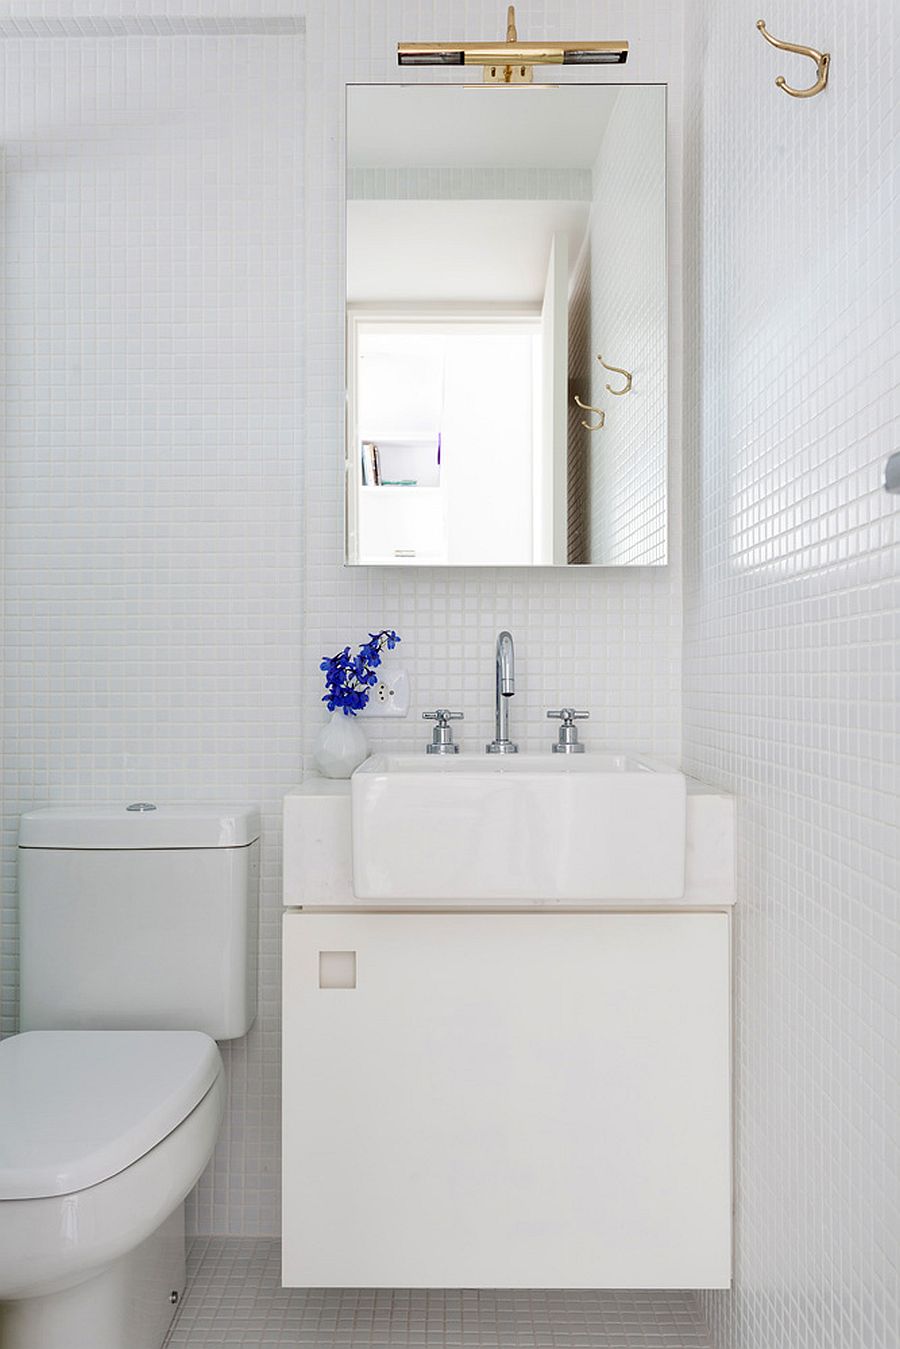 Góc phòng tắm nhỏ, được sơn đơn sắc màu trắng cùng với ánh sáng tự nhiên tạo cảm giác rộng rãi hơn.